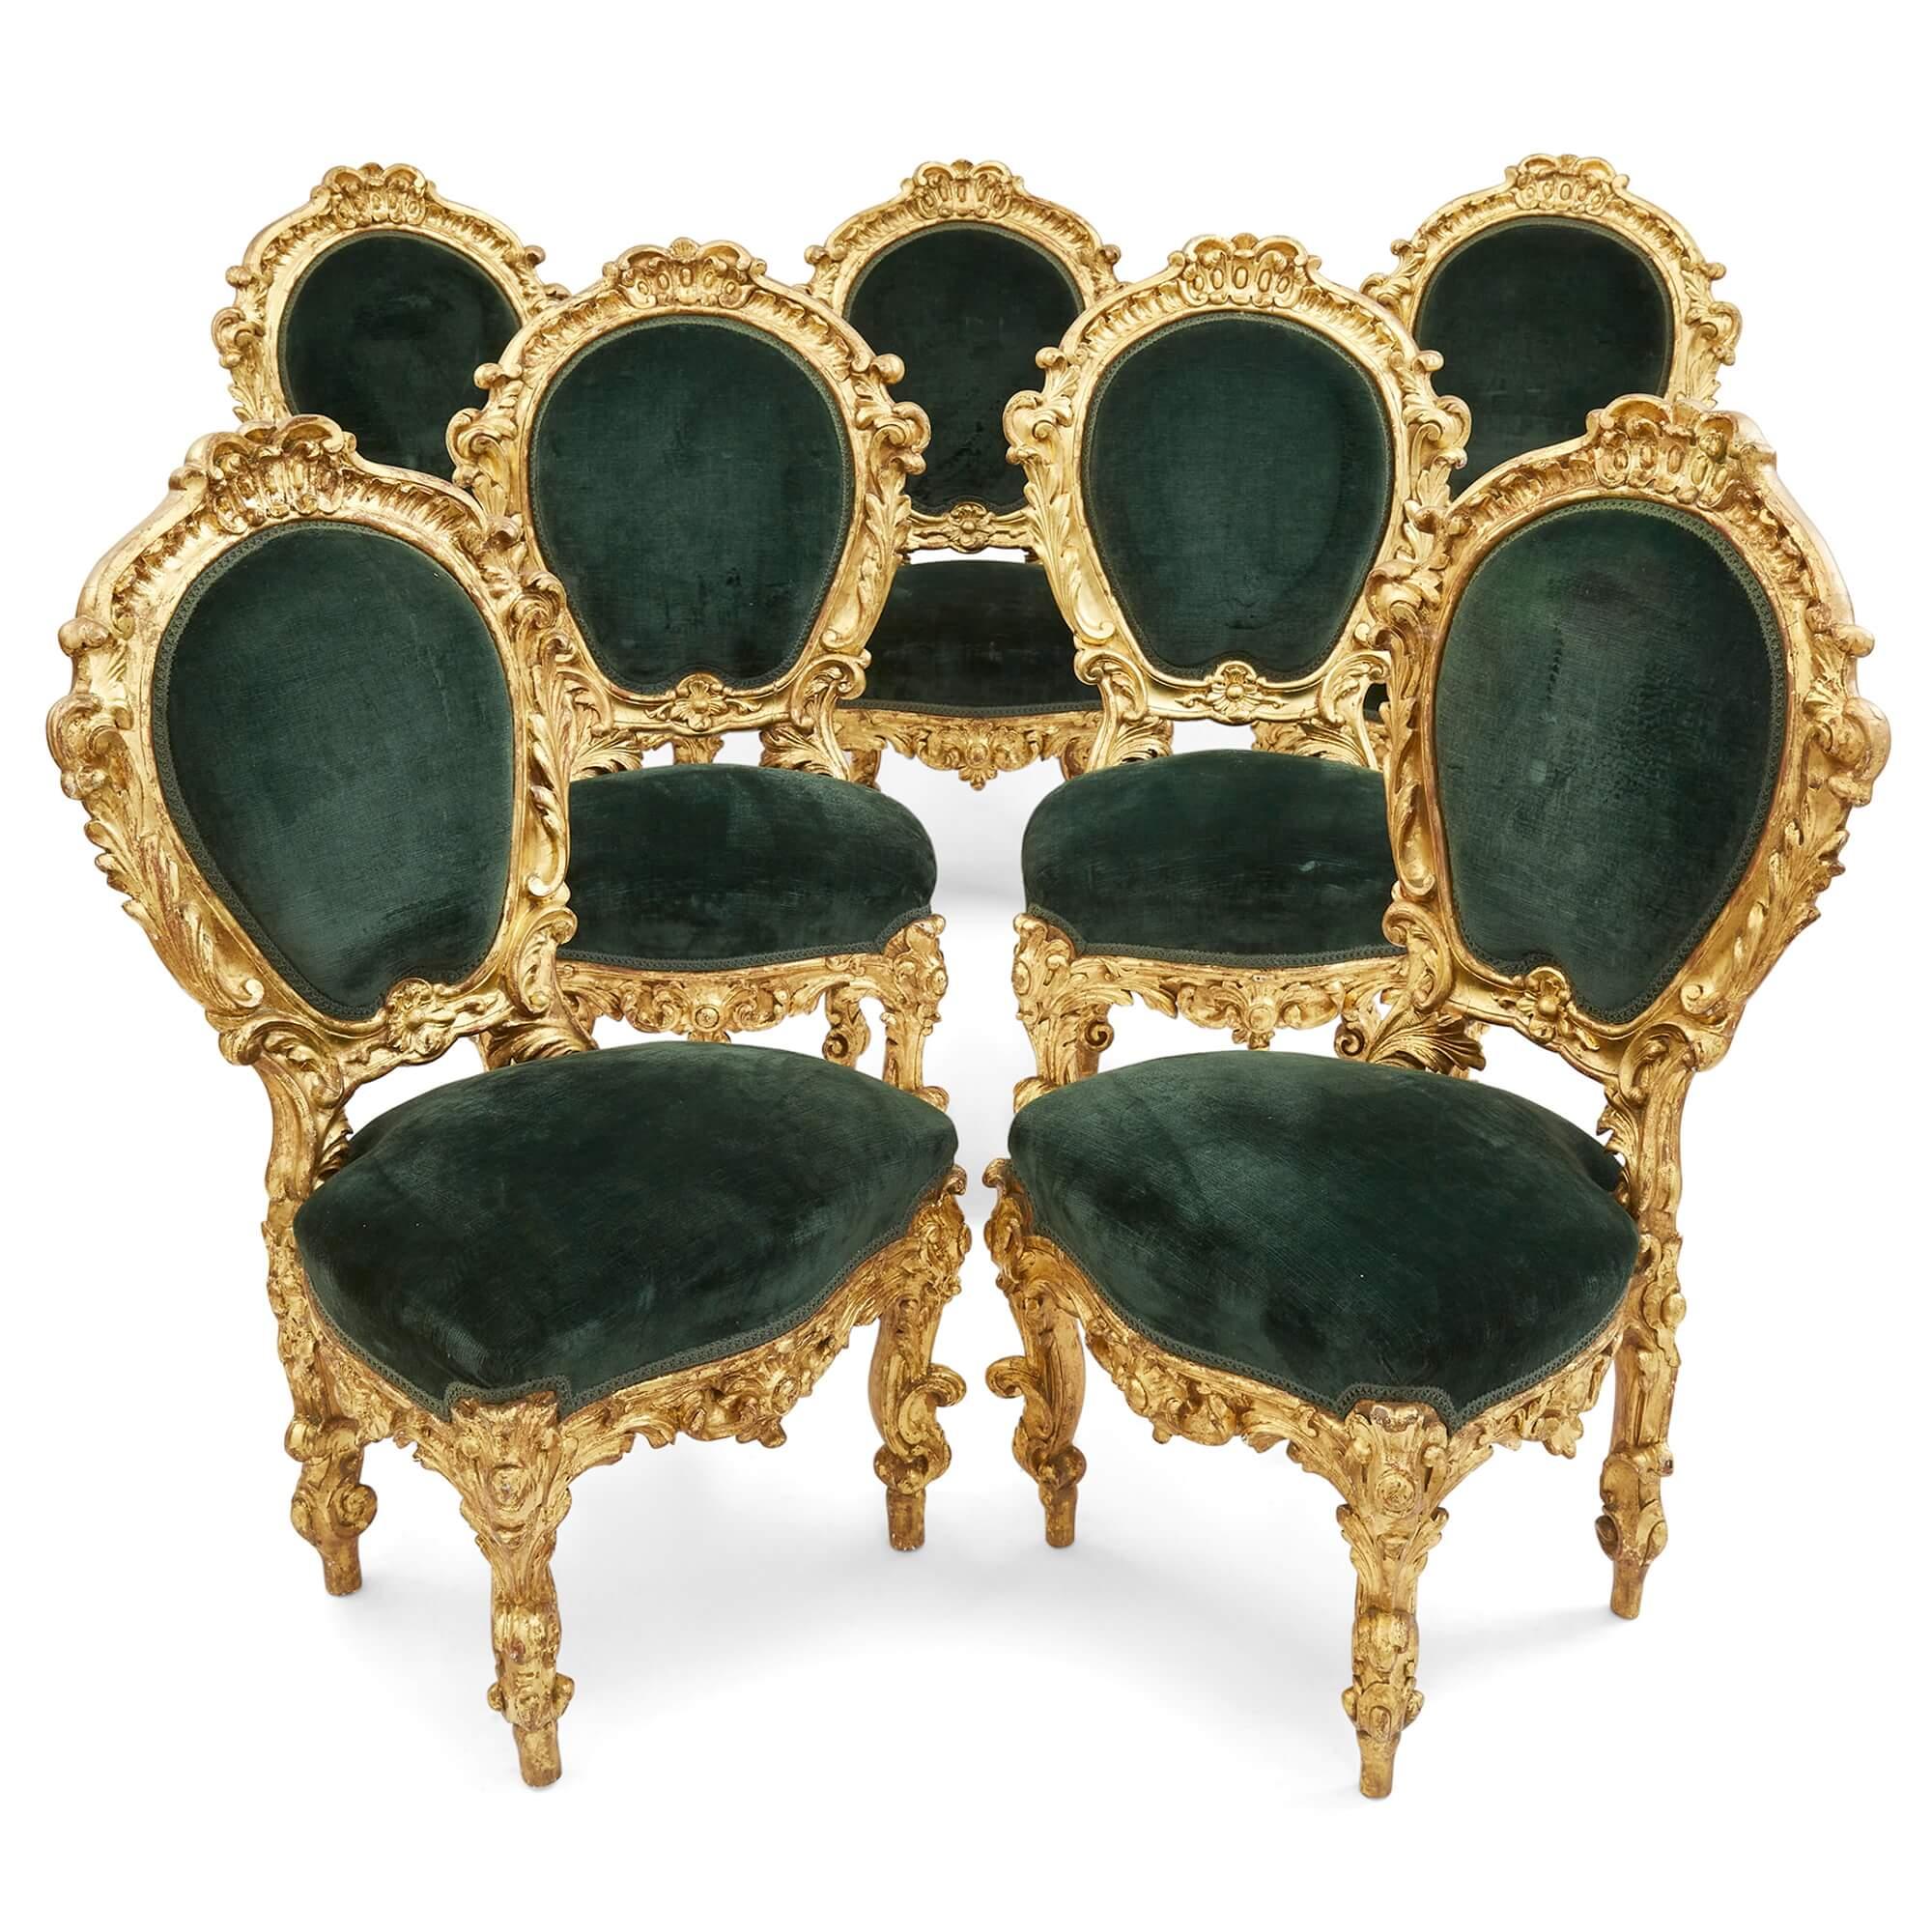 Composée de trois fauteuils et de sept chaises latérales, cette superbe suite en bois doré a été fabriquée en Italie au XIXe siècle. Avec de légères variations dans les dimensions, les dix chaises sont somptueusement décorées de bois doré élaboré